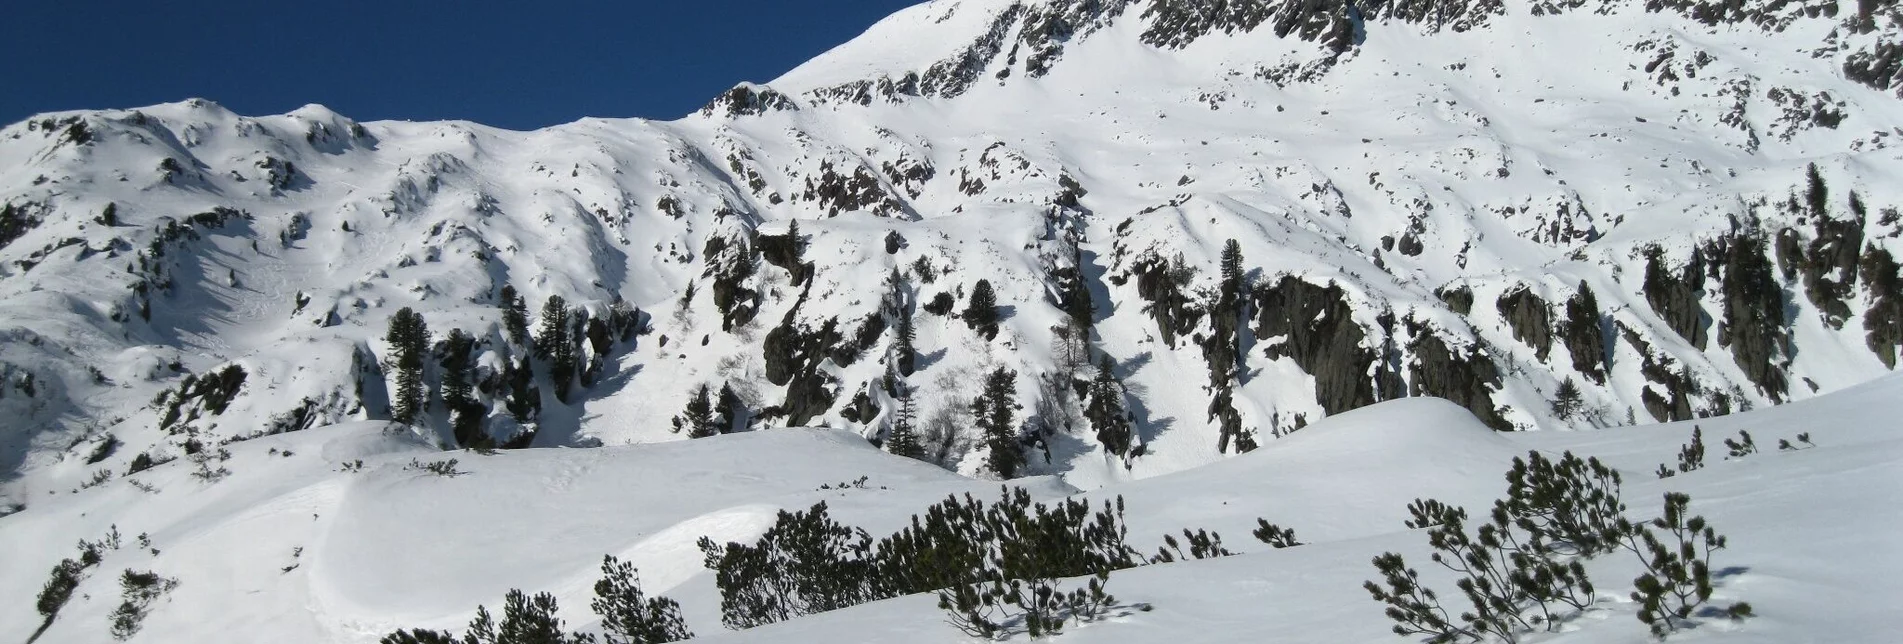 Ski Touring Großer Knallstein 2.599 m - Touren-Impression #1 | © Volkhard Maier